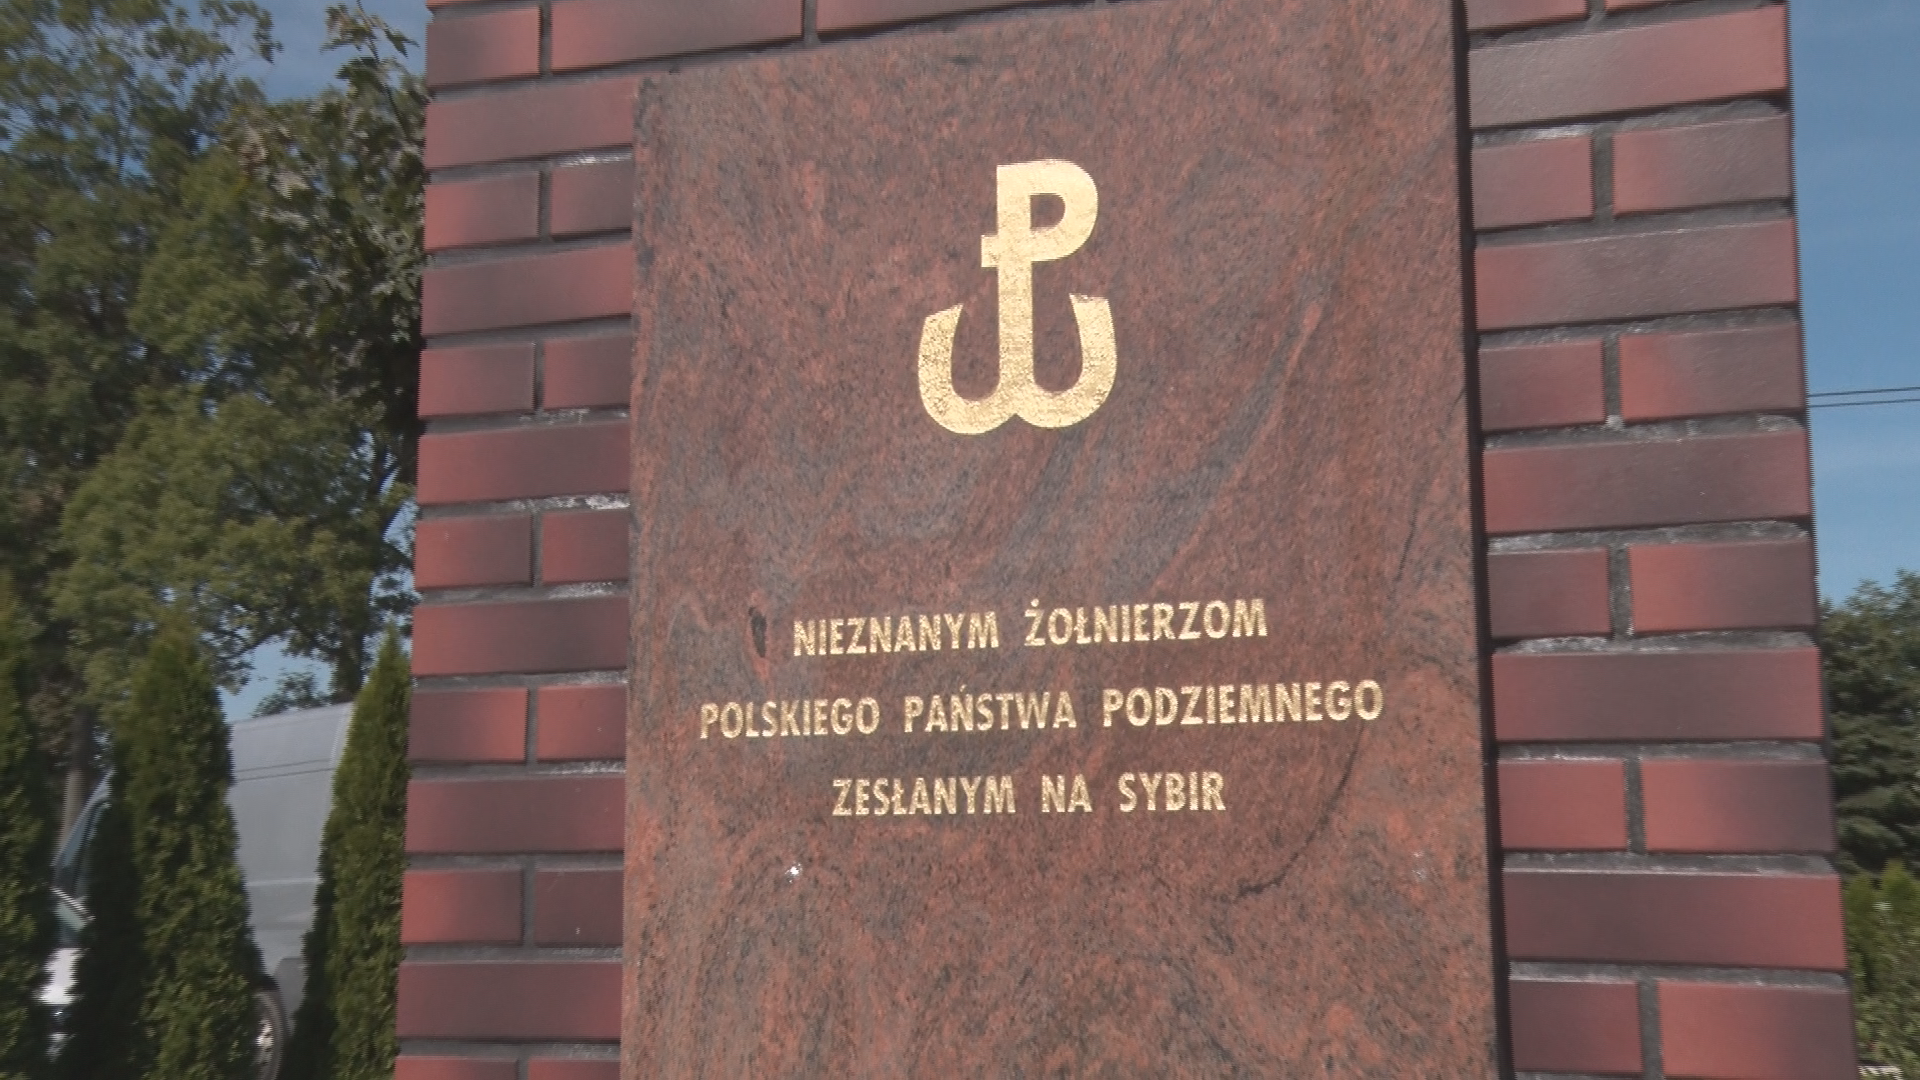 V rocznica odsłonięcia Pomnika Sybiraków w Sędziszowie Młp.